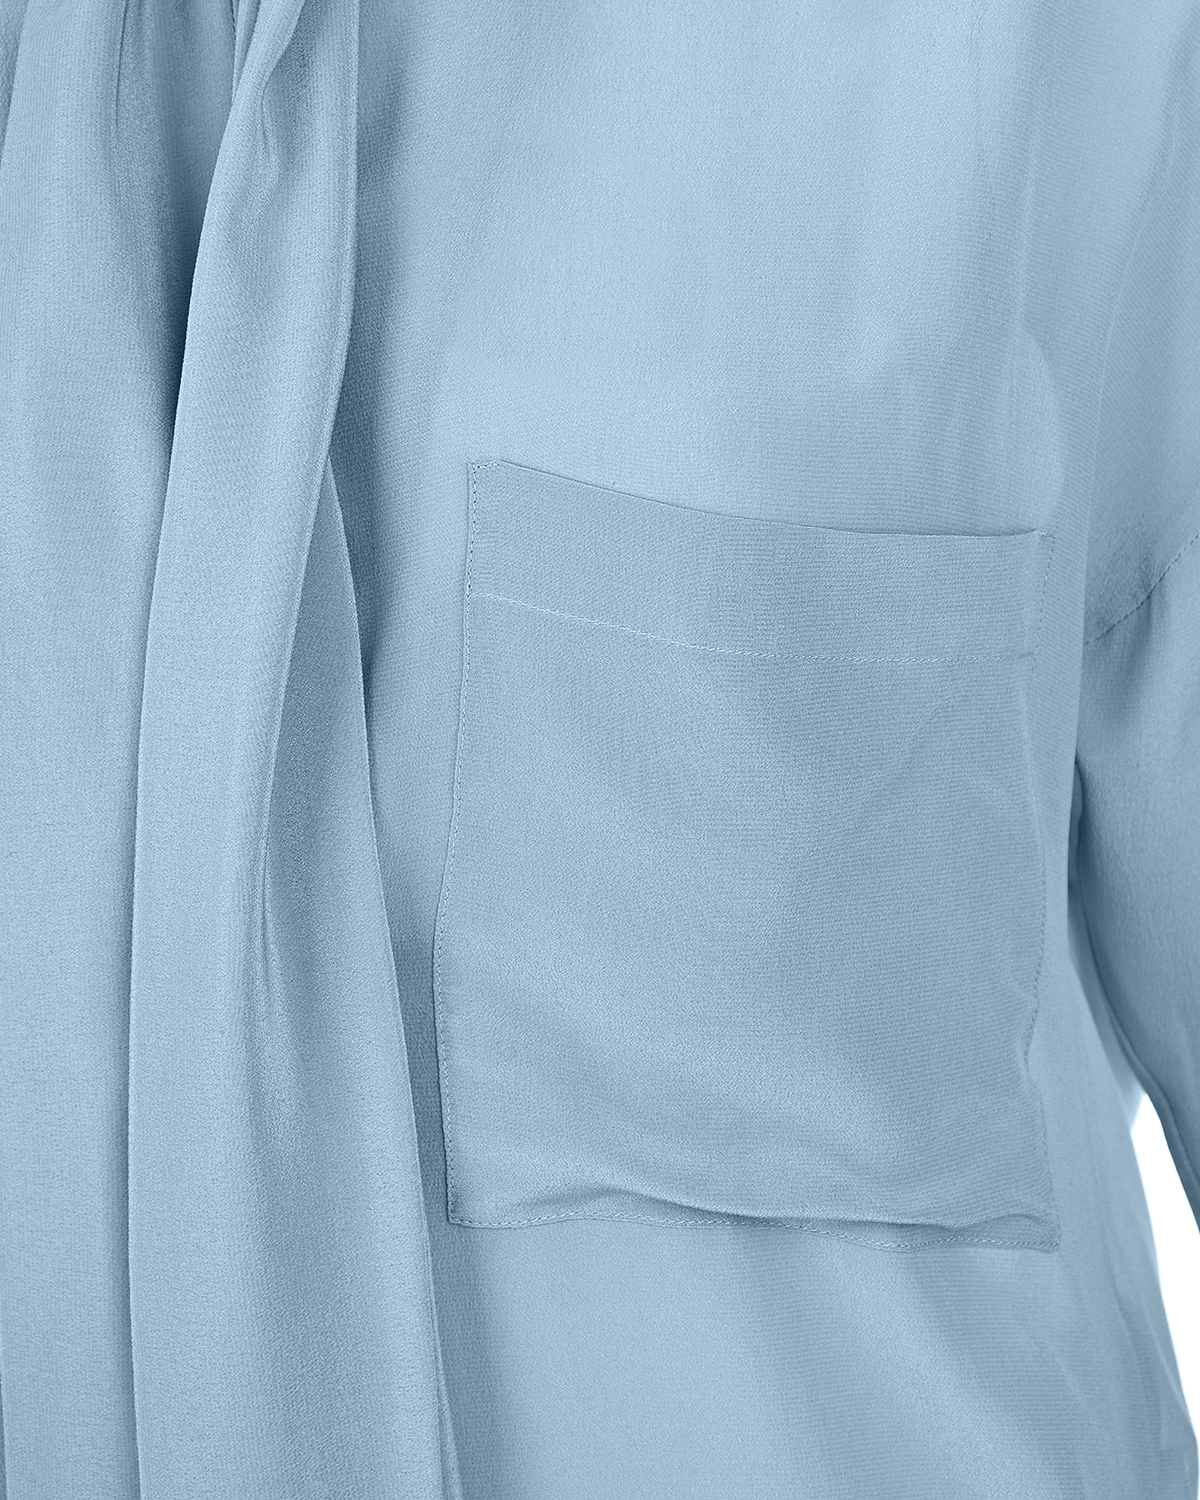 Шелковая блуза с воротом аскот Jejia - фото 6